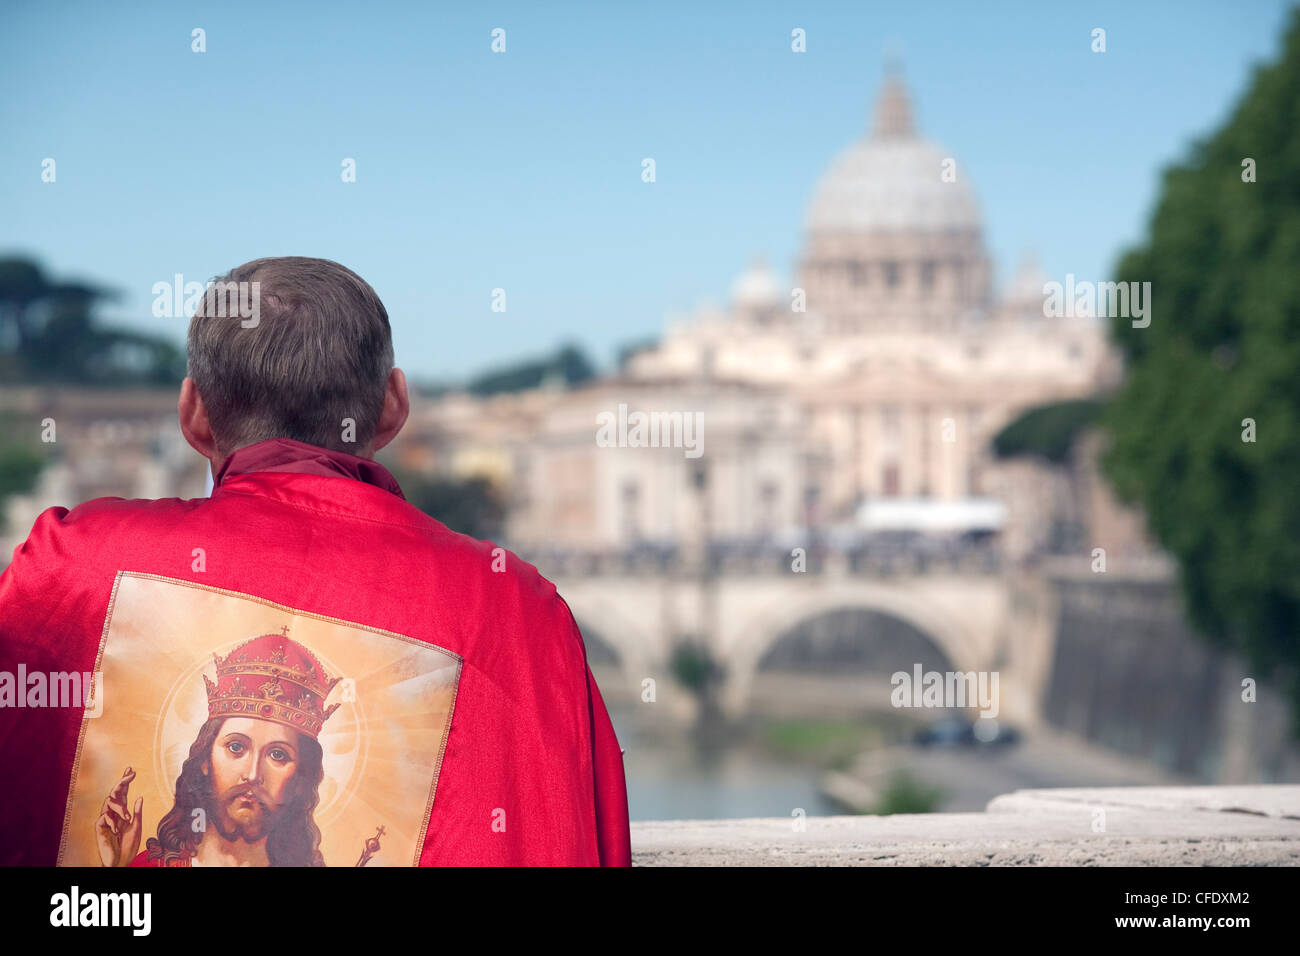 Mirando a la Catedral de San Pedro durante la beatificación de Juan Pablo II, Roma, Lazio, Italia, Europa Foto de stock